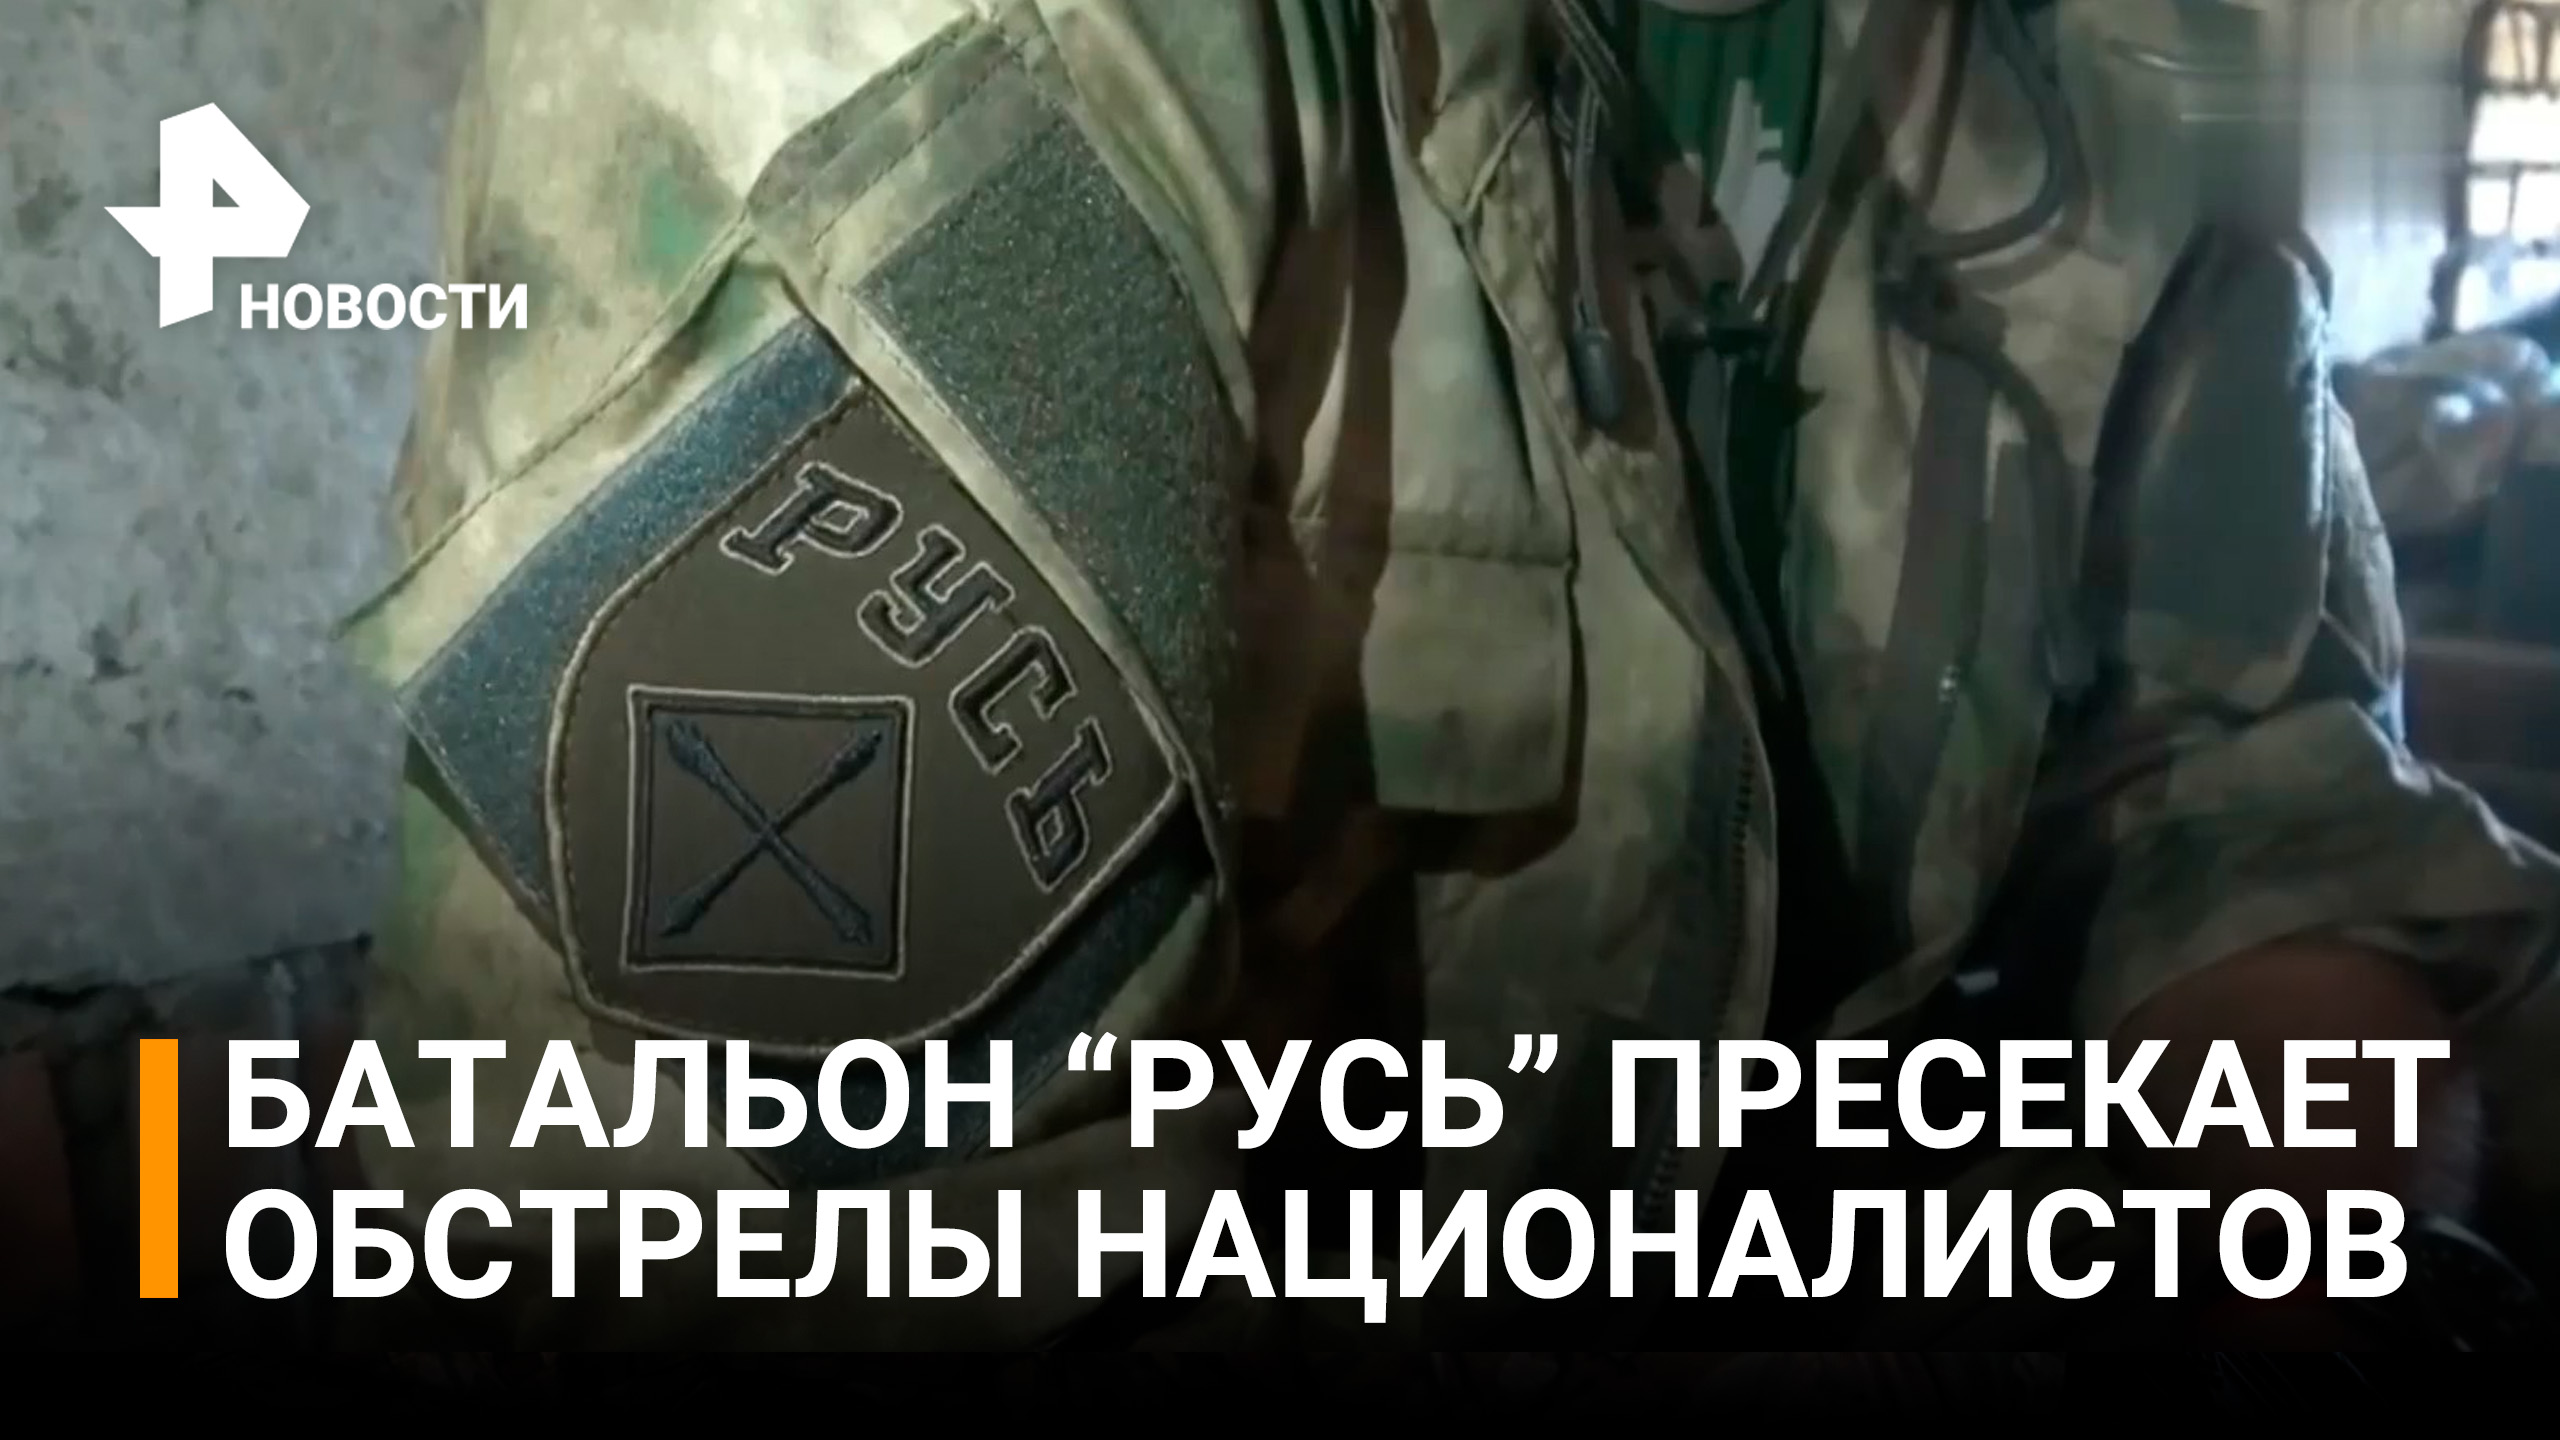 Как батальон "Русь" из ДНР пресекает обстрелы националистов на передовой / РЕН Новости